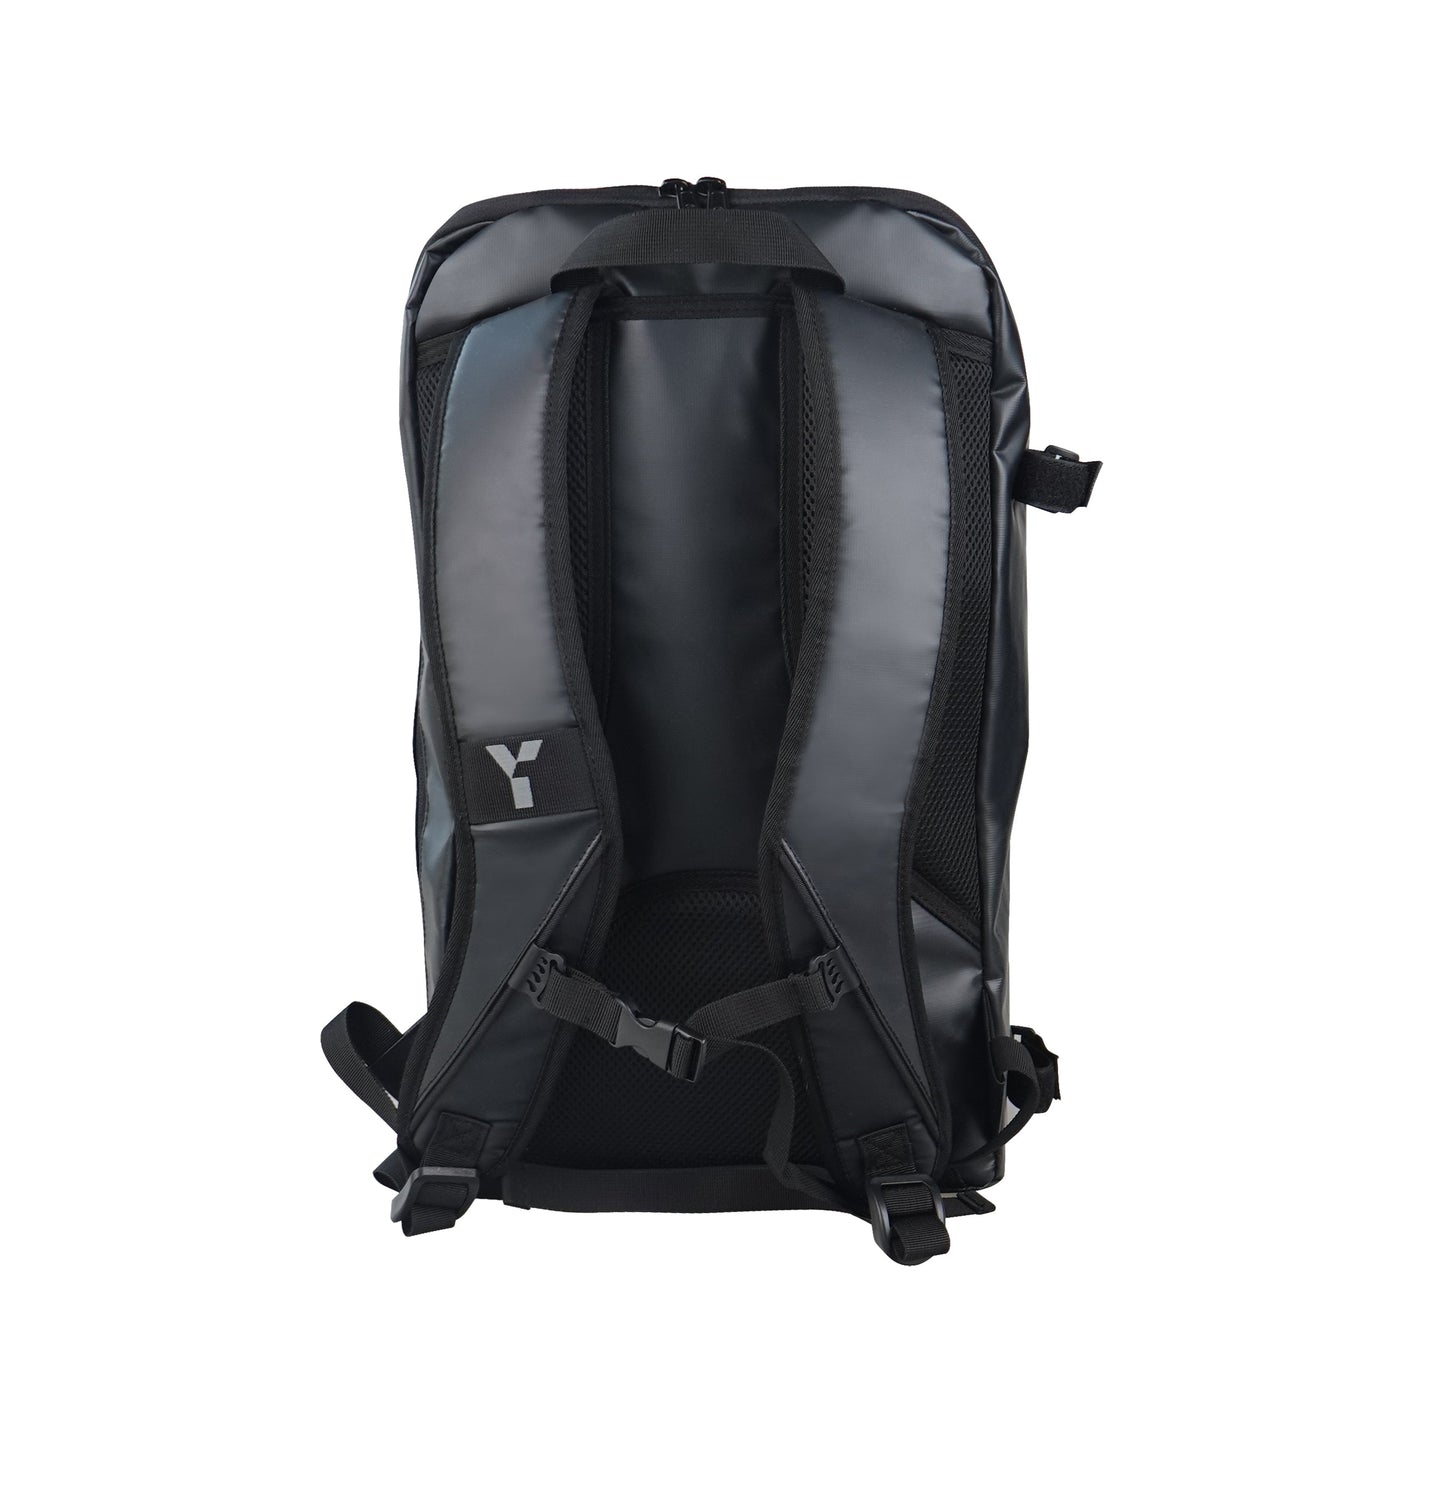 Ranger Backpack - Black